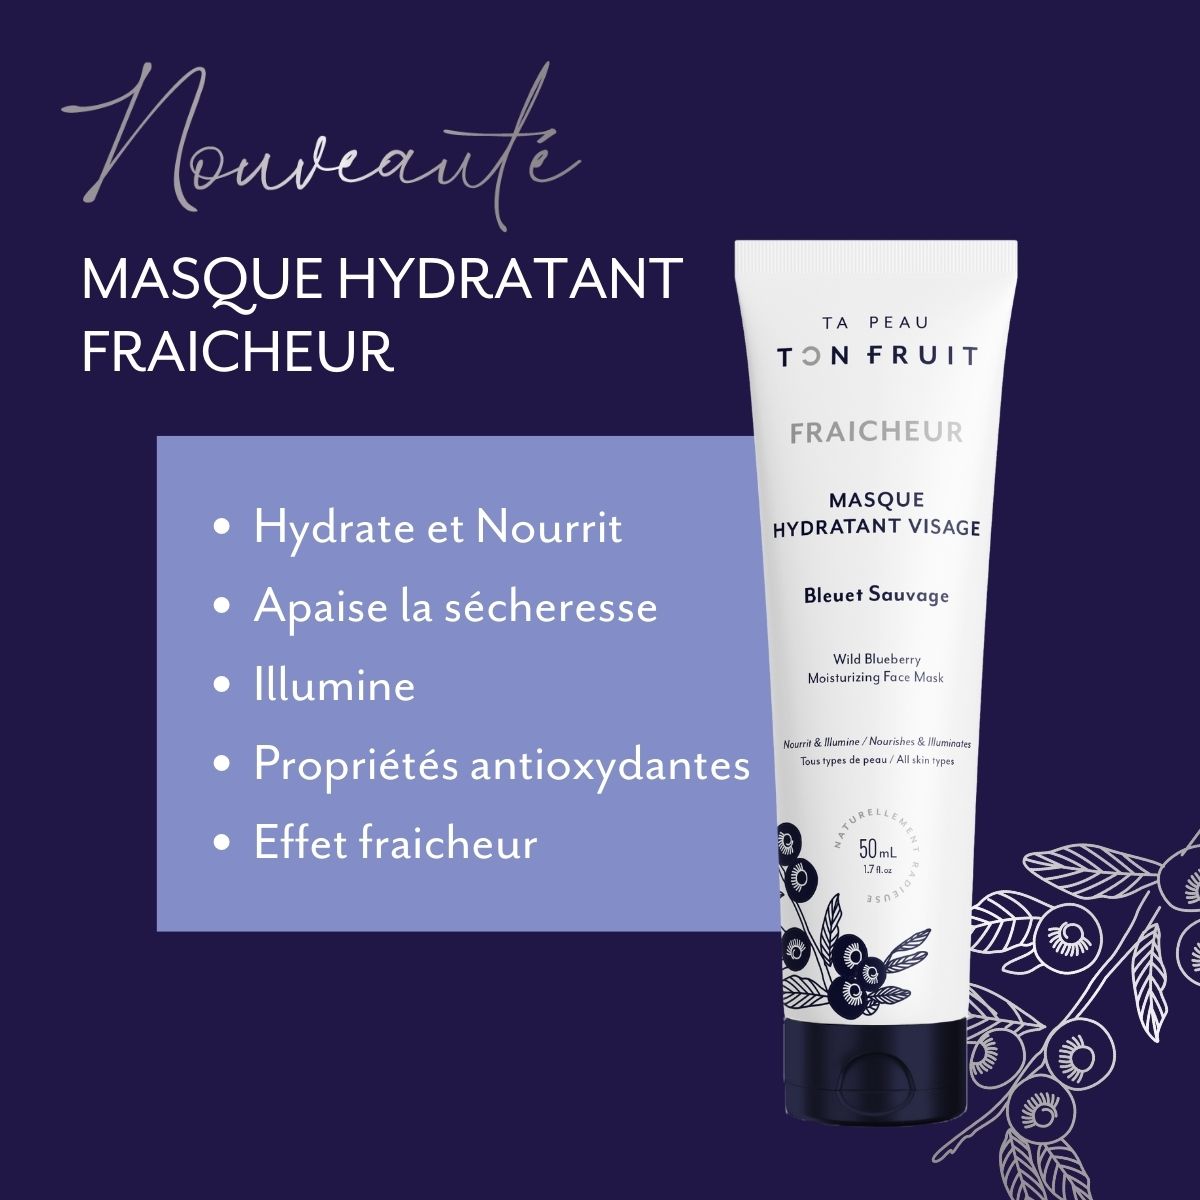 Masque hydratant - Fraicheur